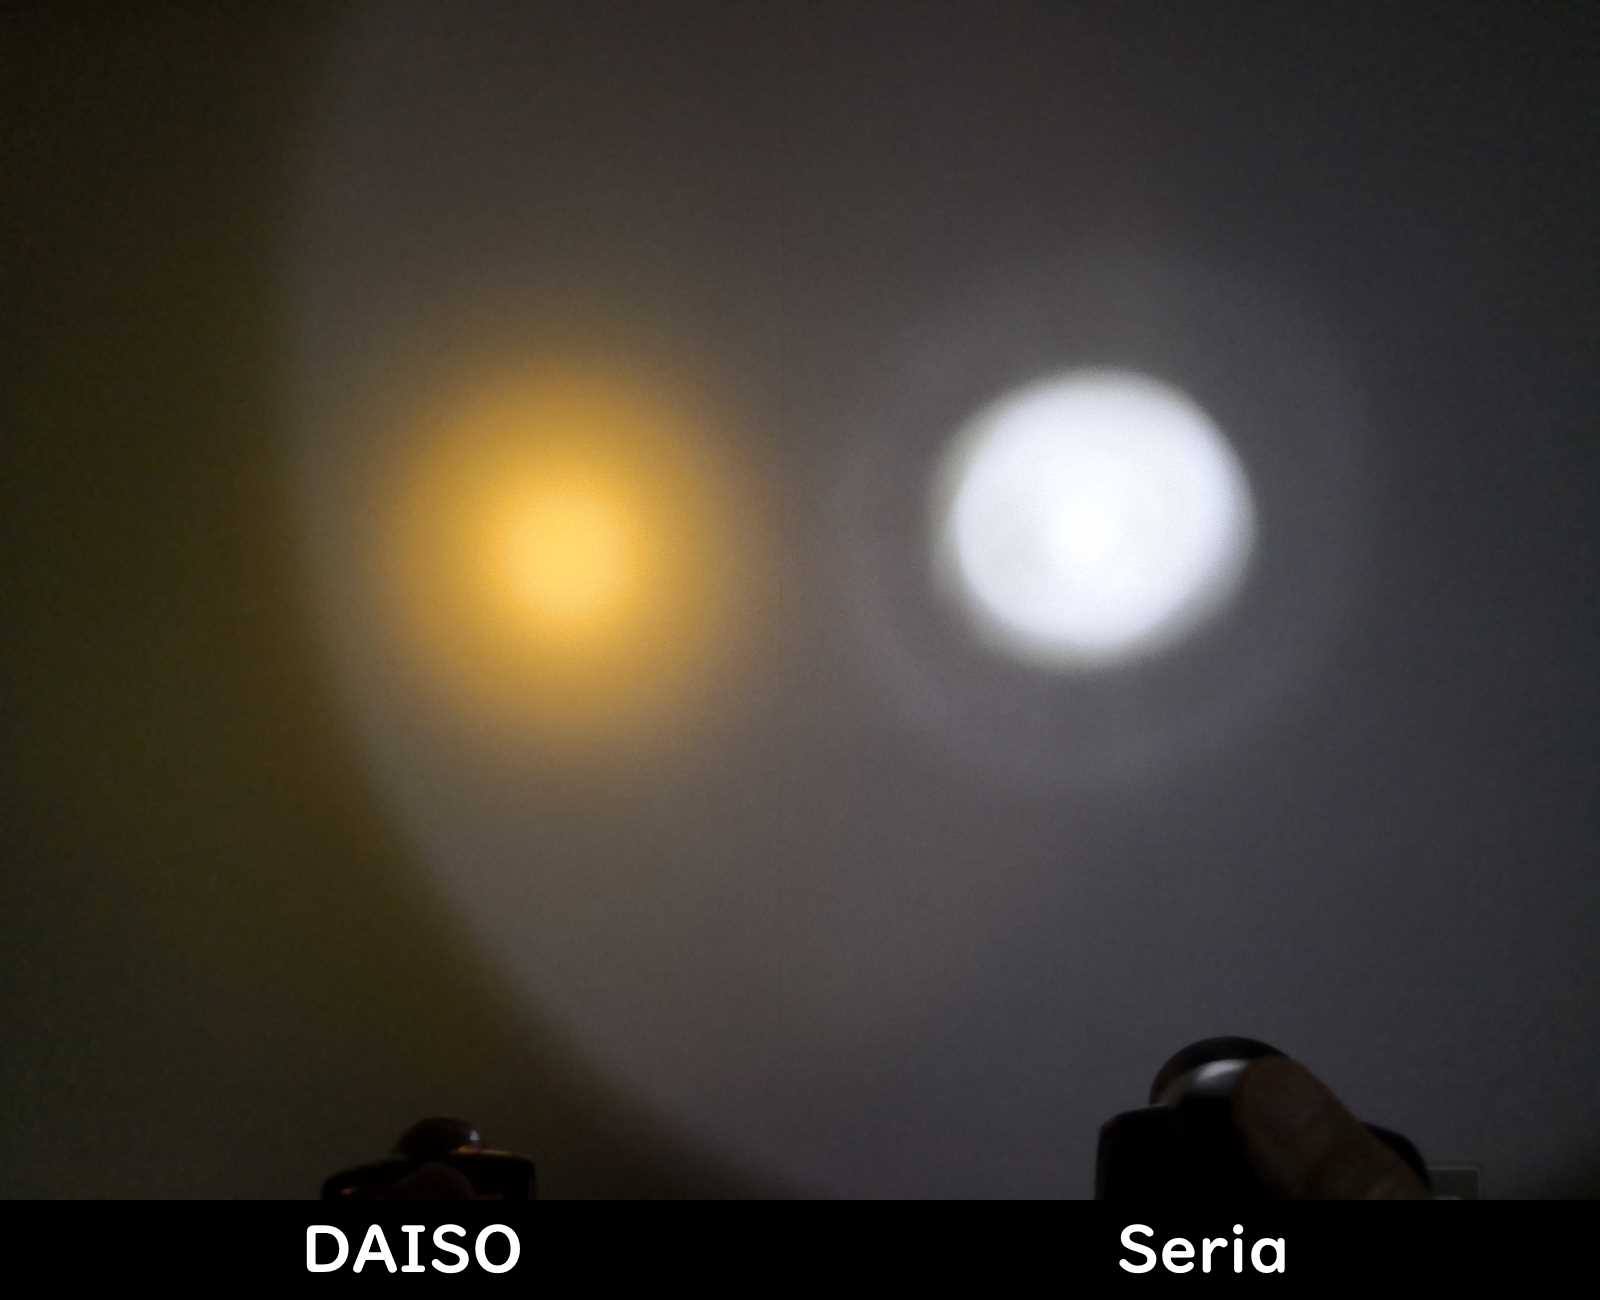 DAISOの200円ヘッドライトと比較